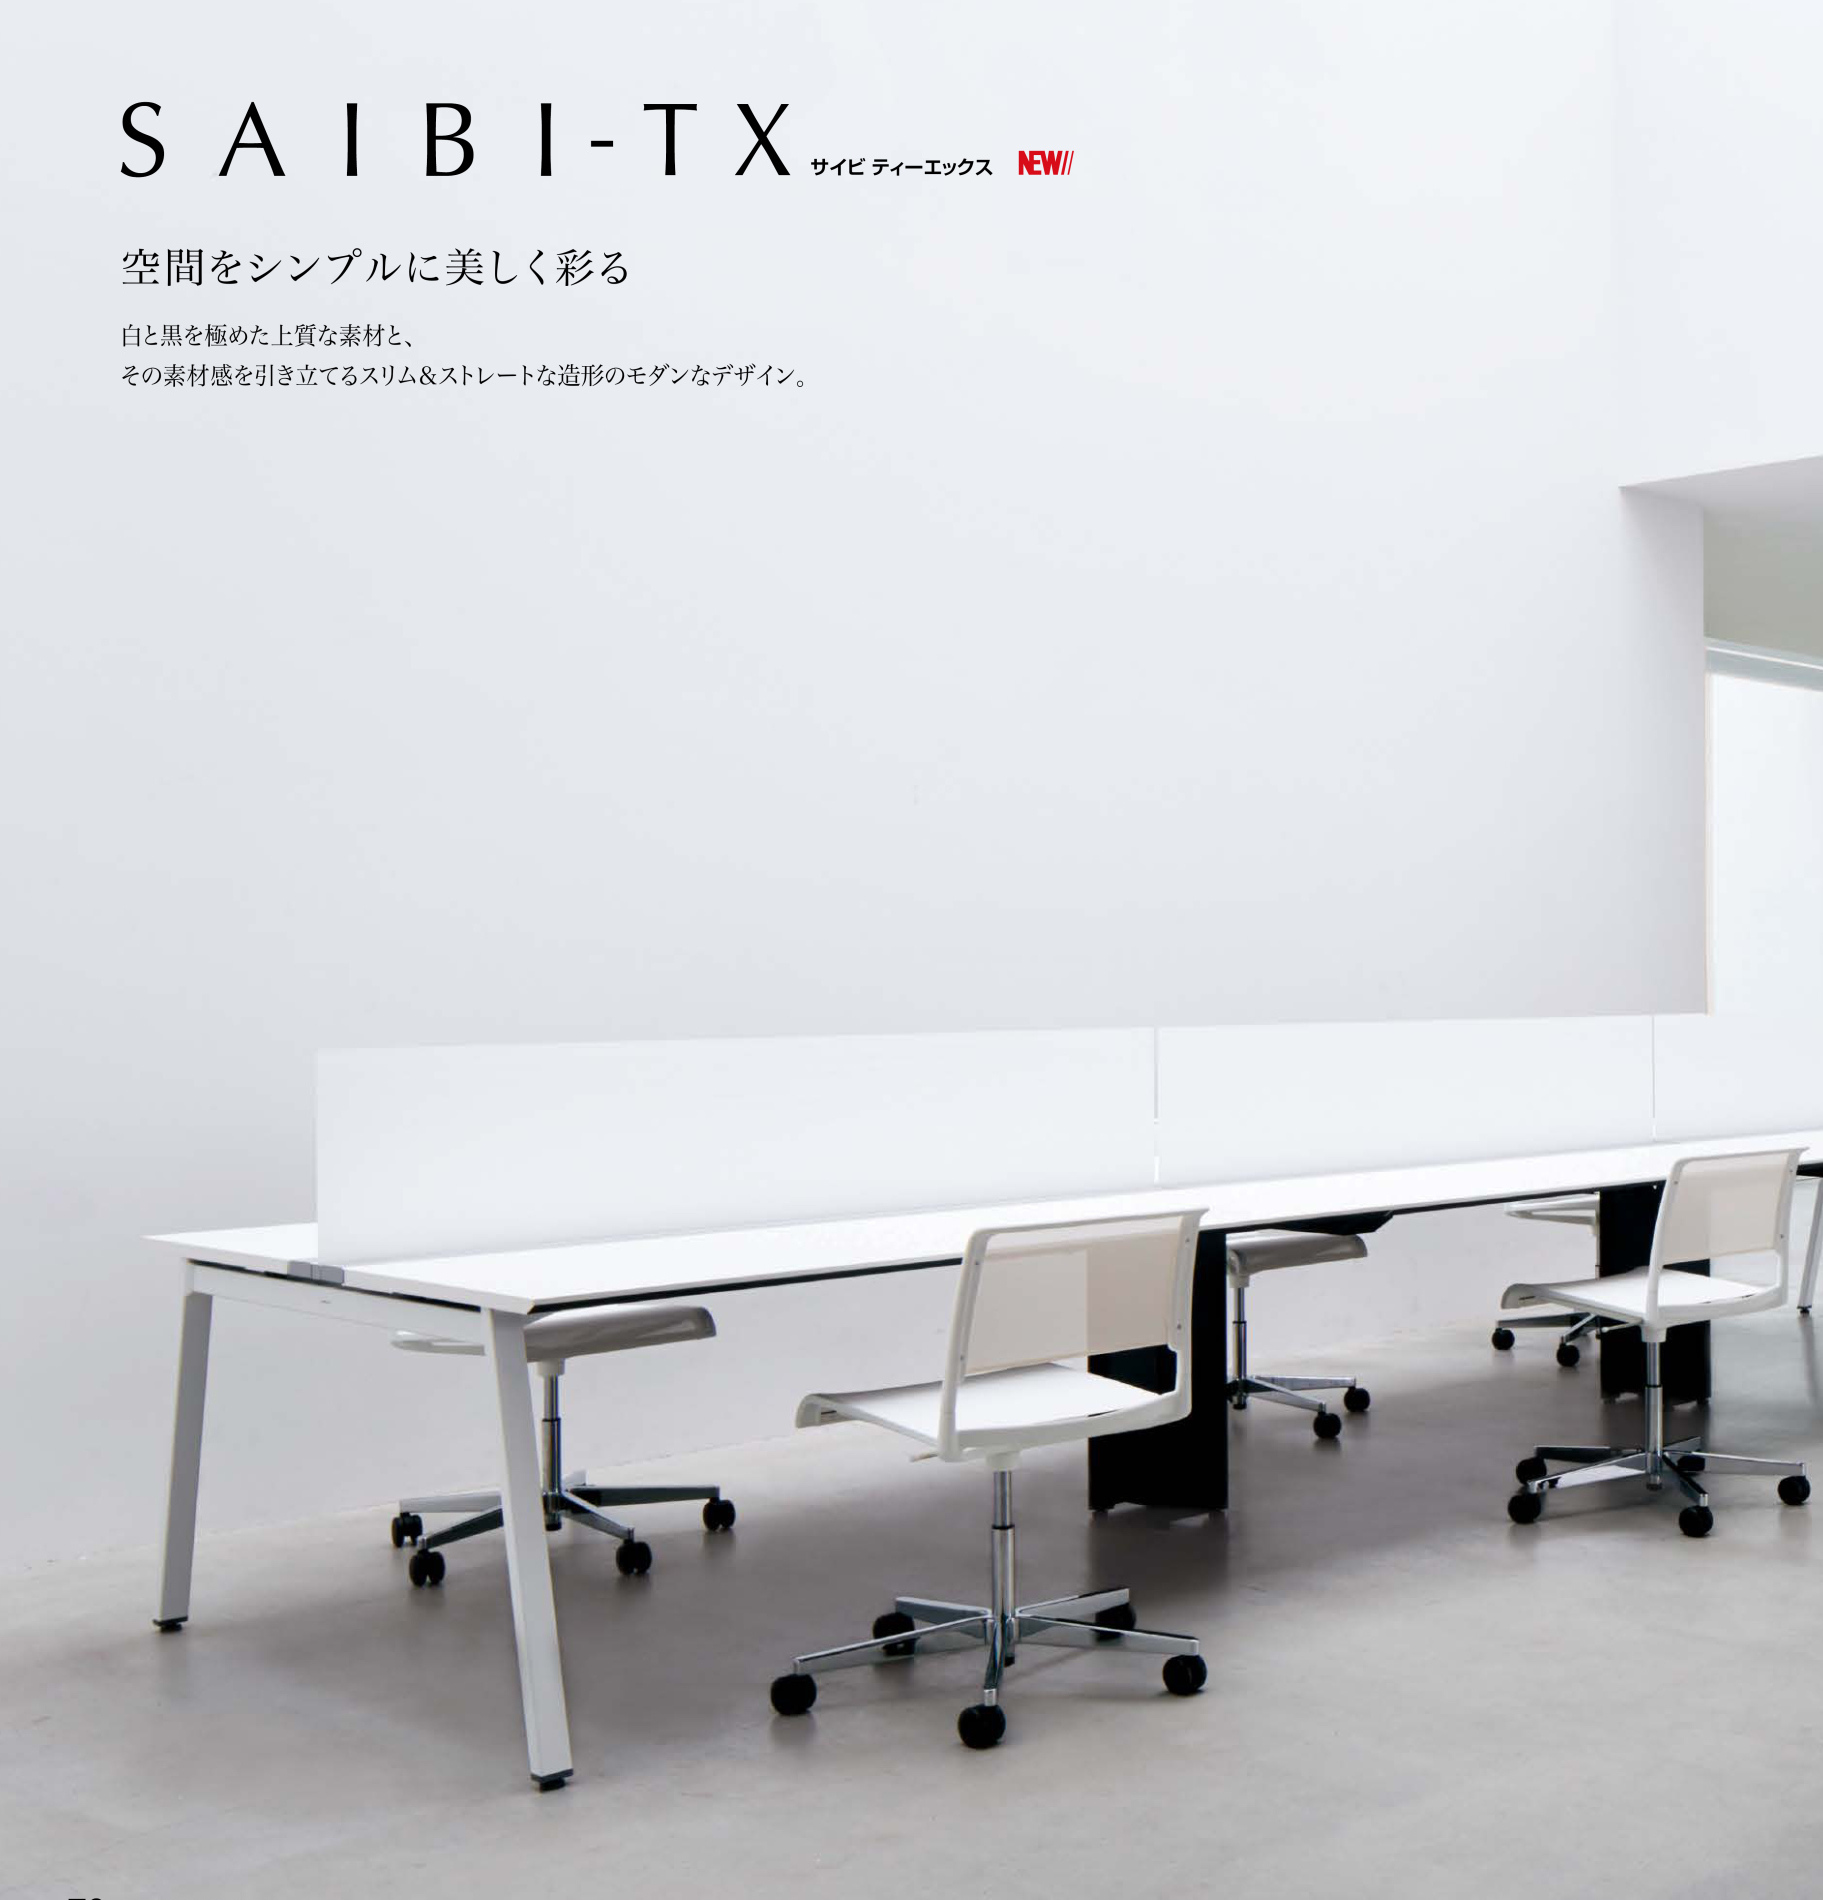 往復送料無料 エコノミーオフィスコクヨ SAIBI-TX サイビティーエックス テーブル部分 R側 木目天板 幅1800×奥行700mm 収納